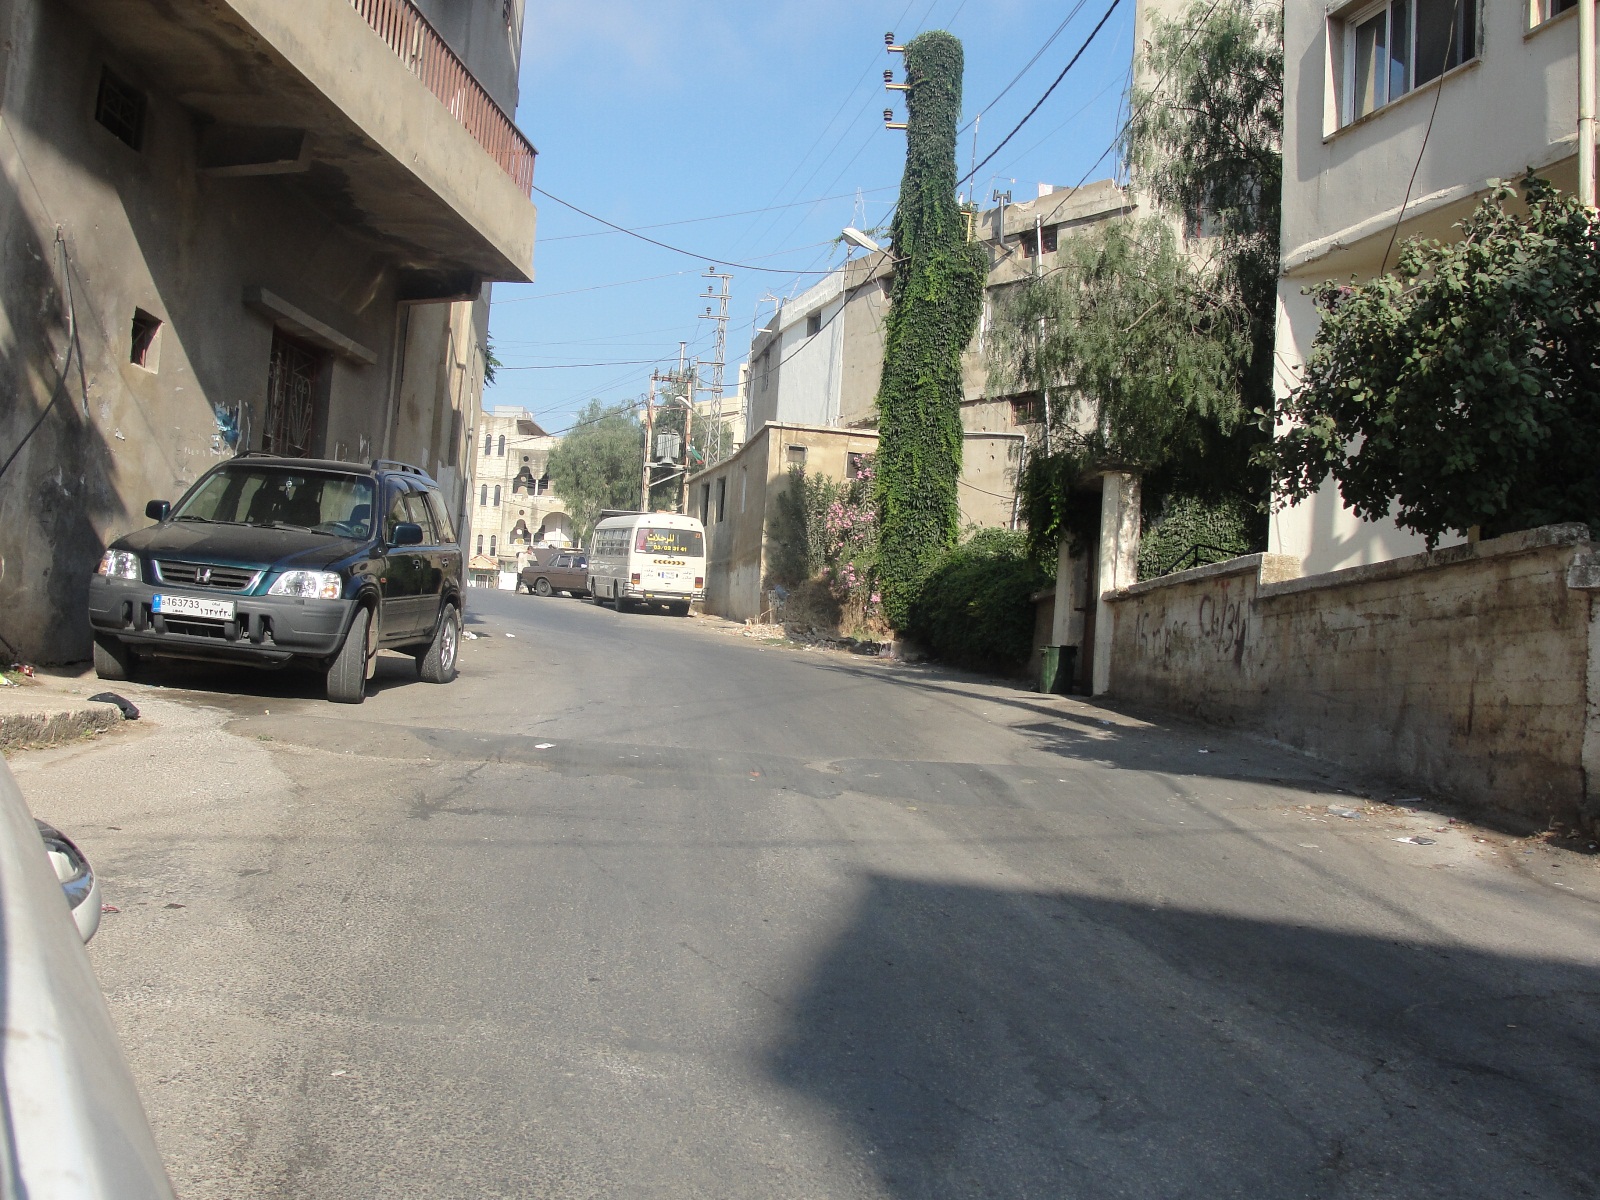  المشروع الخطأ في بلدية الخيام:  مشروع المطبّات في شوارع البلدة